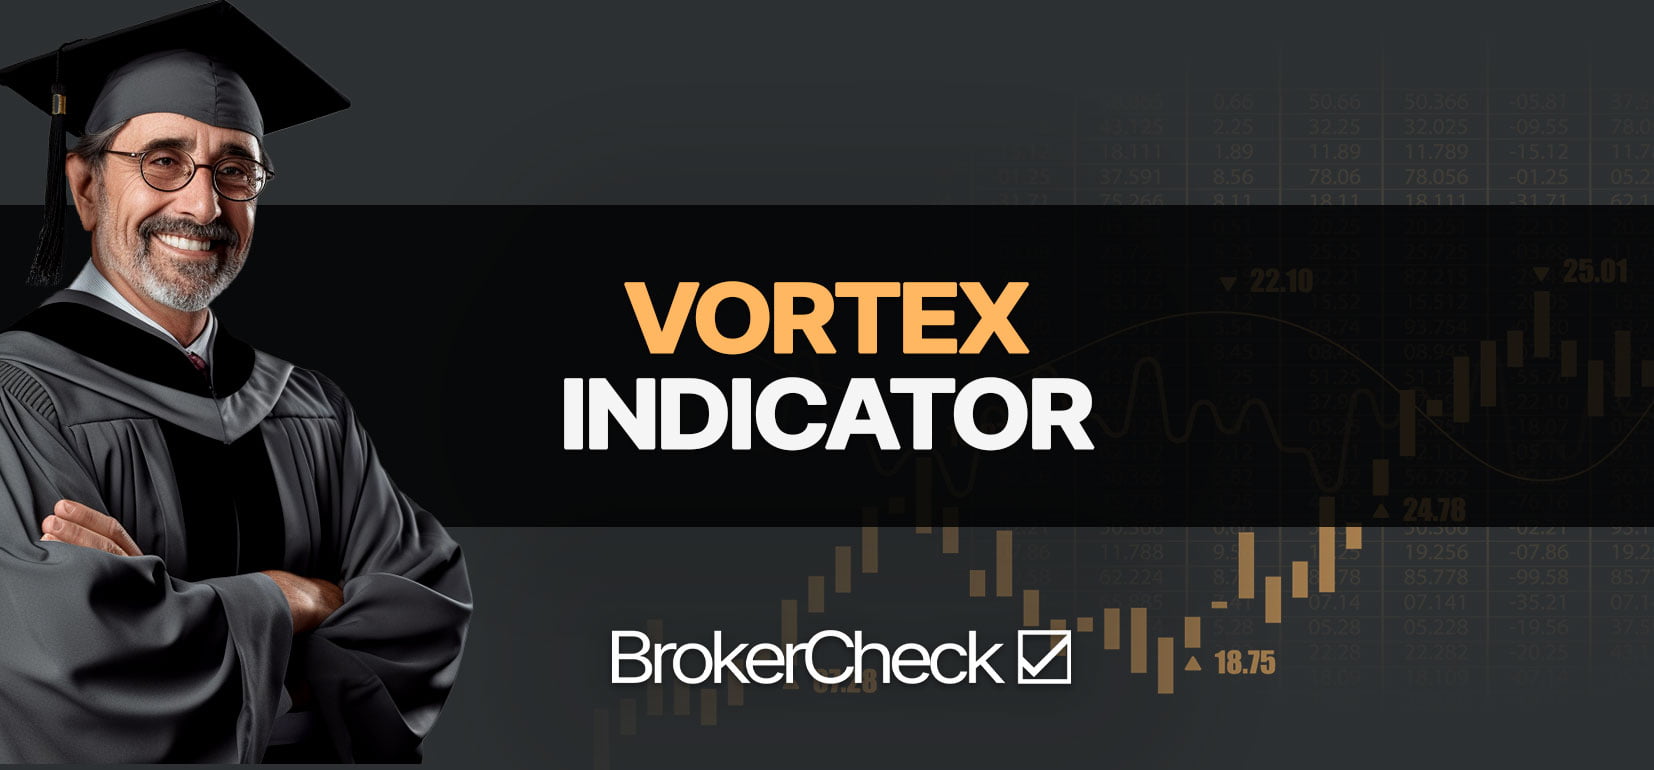 Melhores configurações e estratégia do indicador Vortex